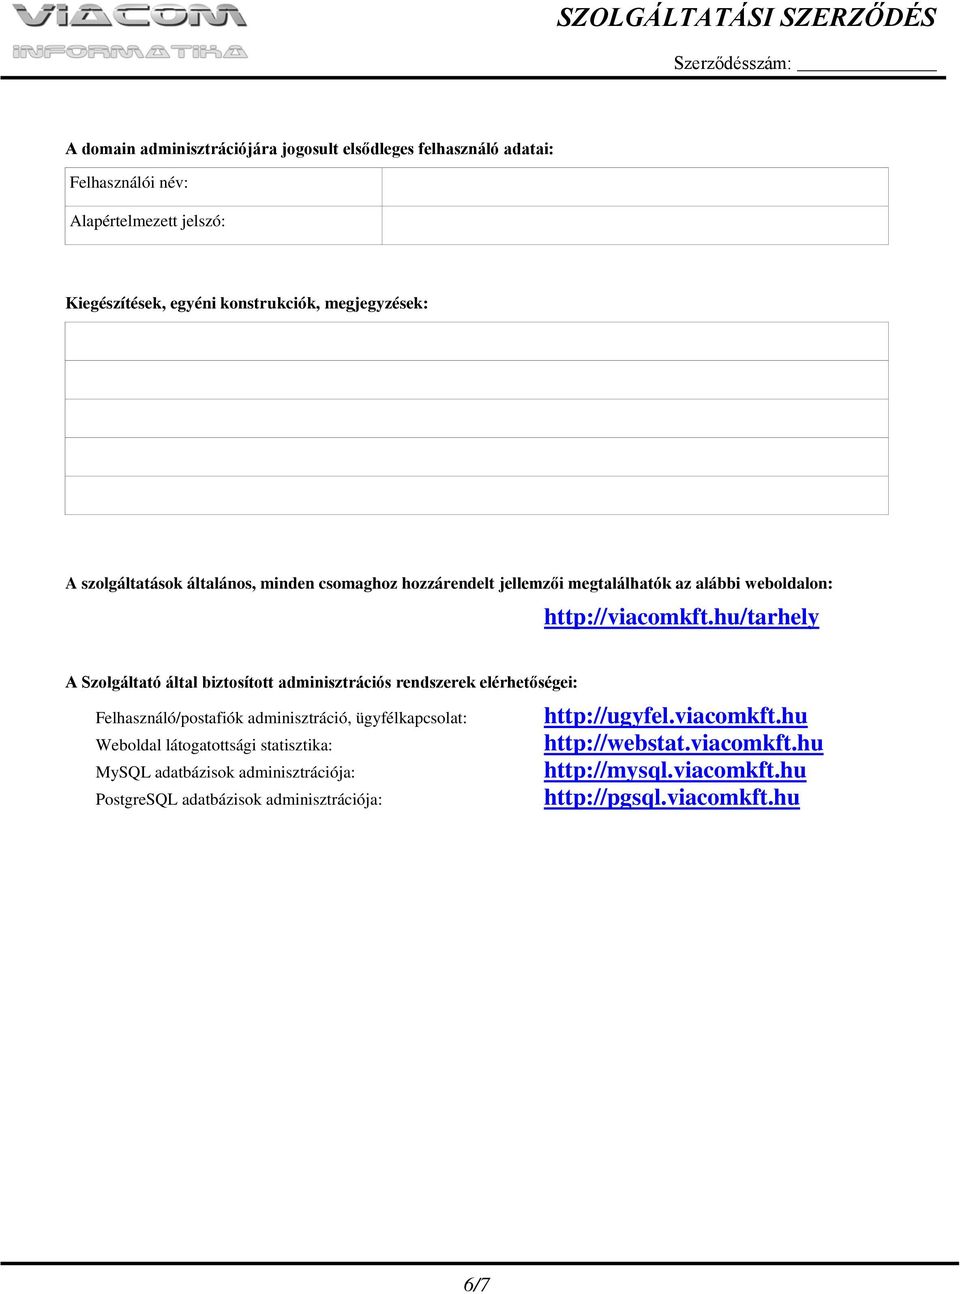 hu/tarhely A Szolgáltató által biztosított adminisztrációs rendszerek elérhetőségei: Felhasználó/postafiók adminisztráció, ügyfélkapcsolat: Weboldal